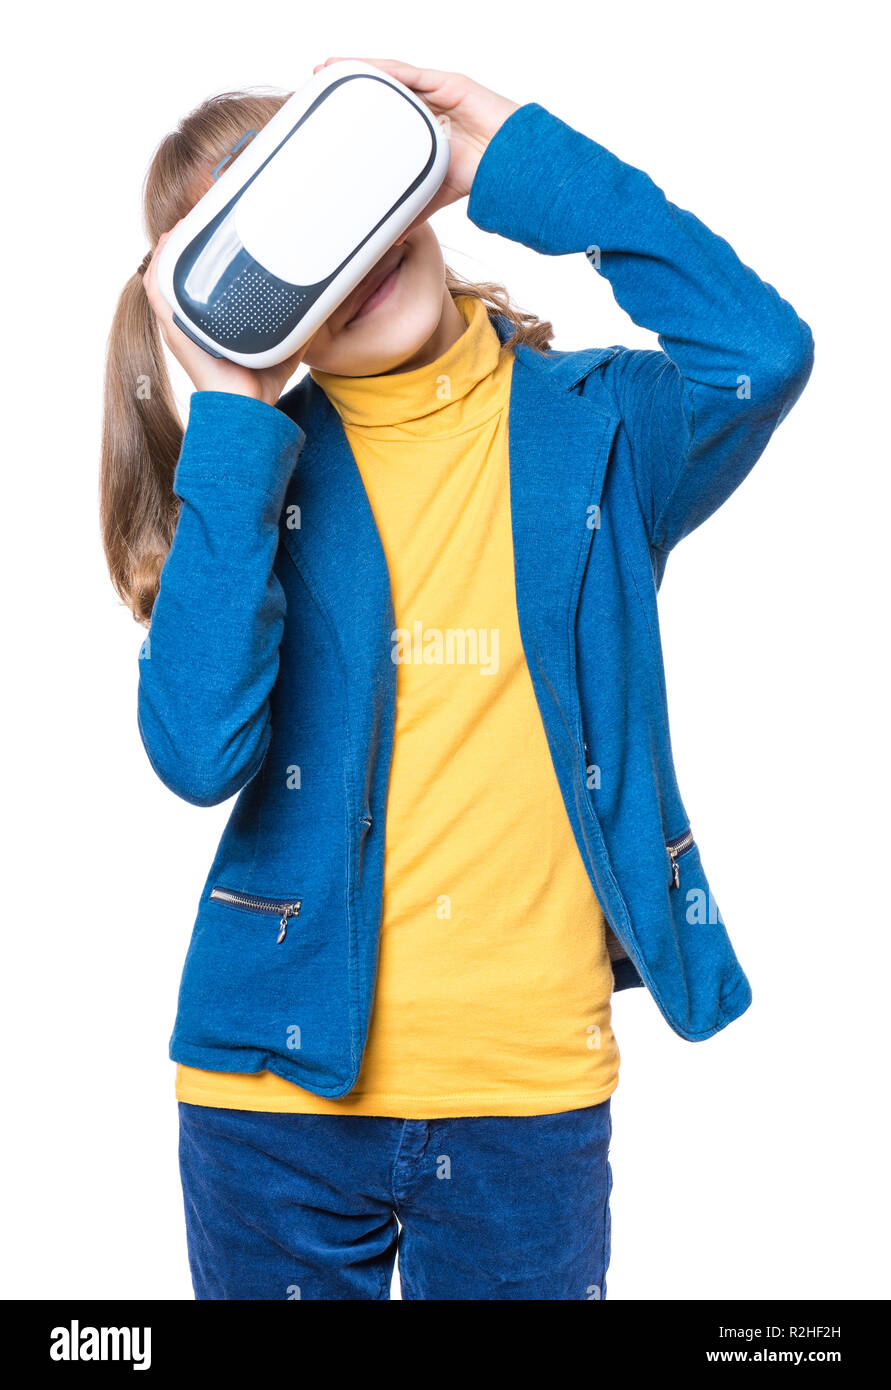 Kleines Mädchen mit VR-Brille Stockfoto